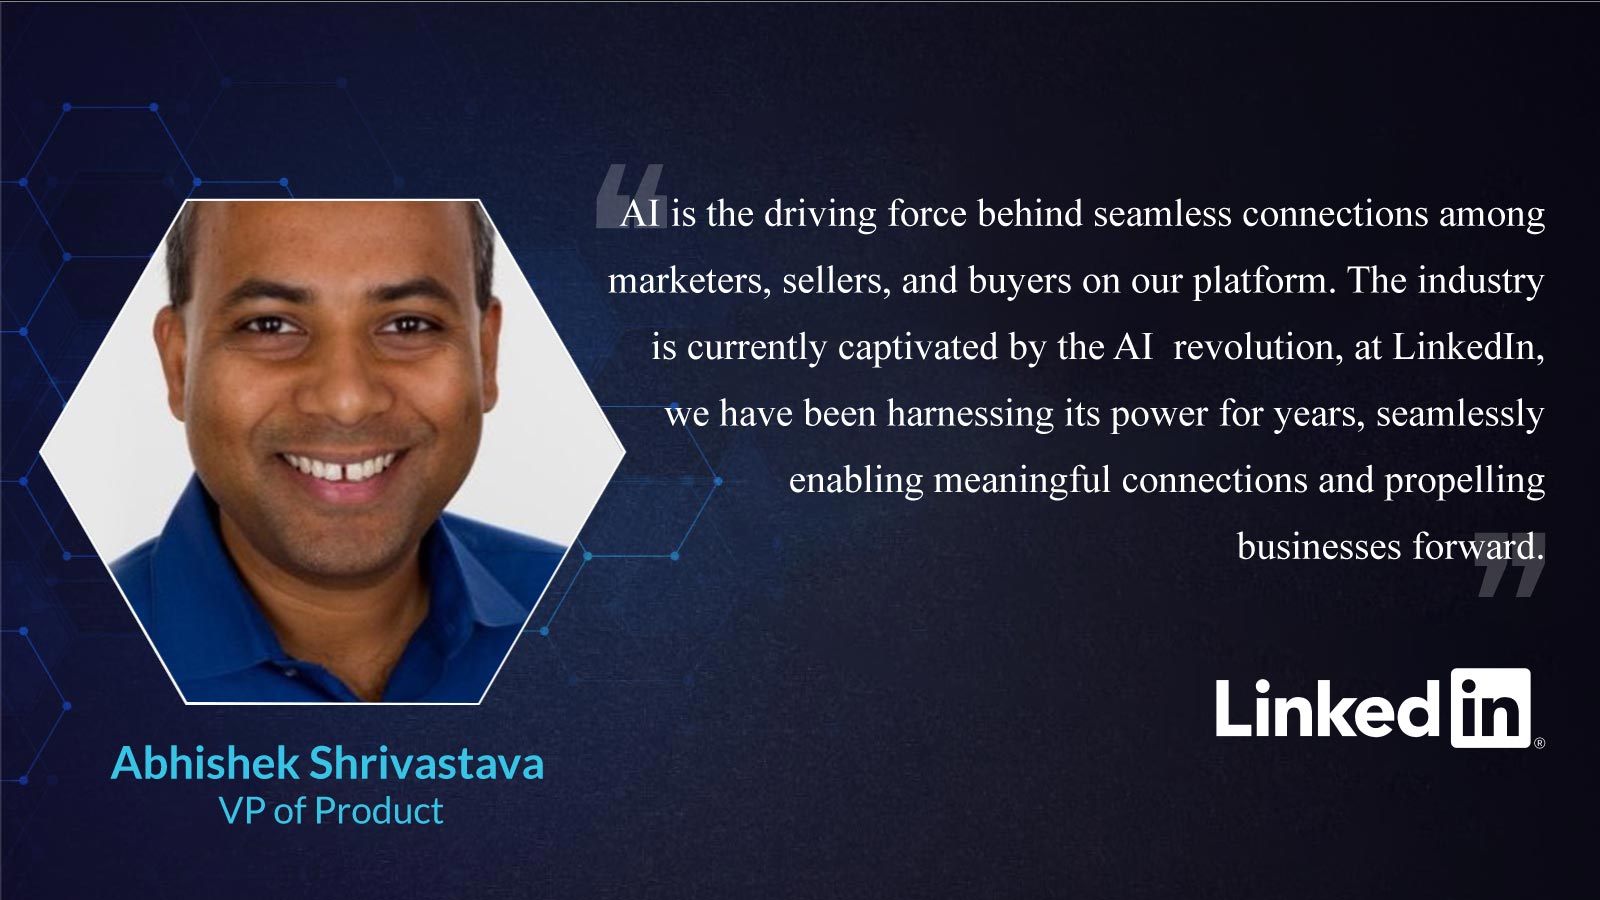 Abhishek Shrivastava, VP of Product at LinkedIn